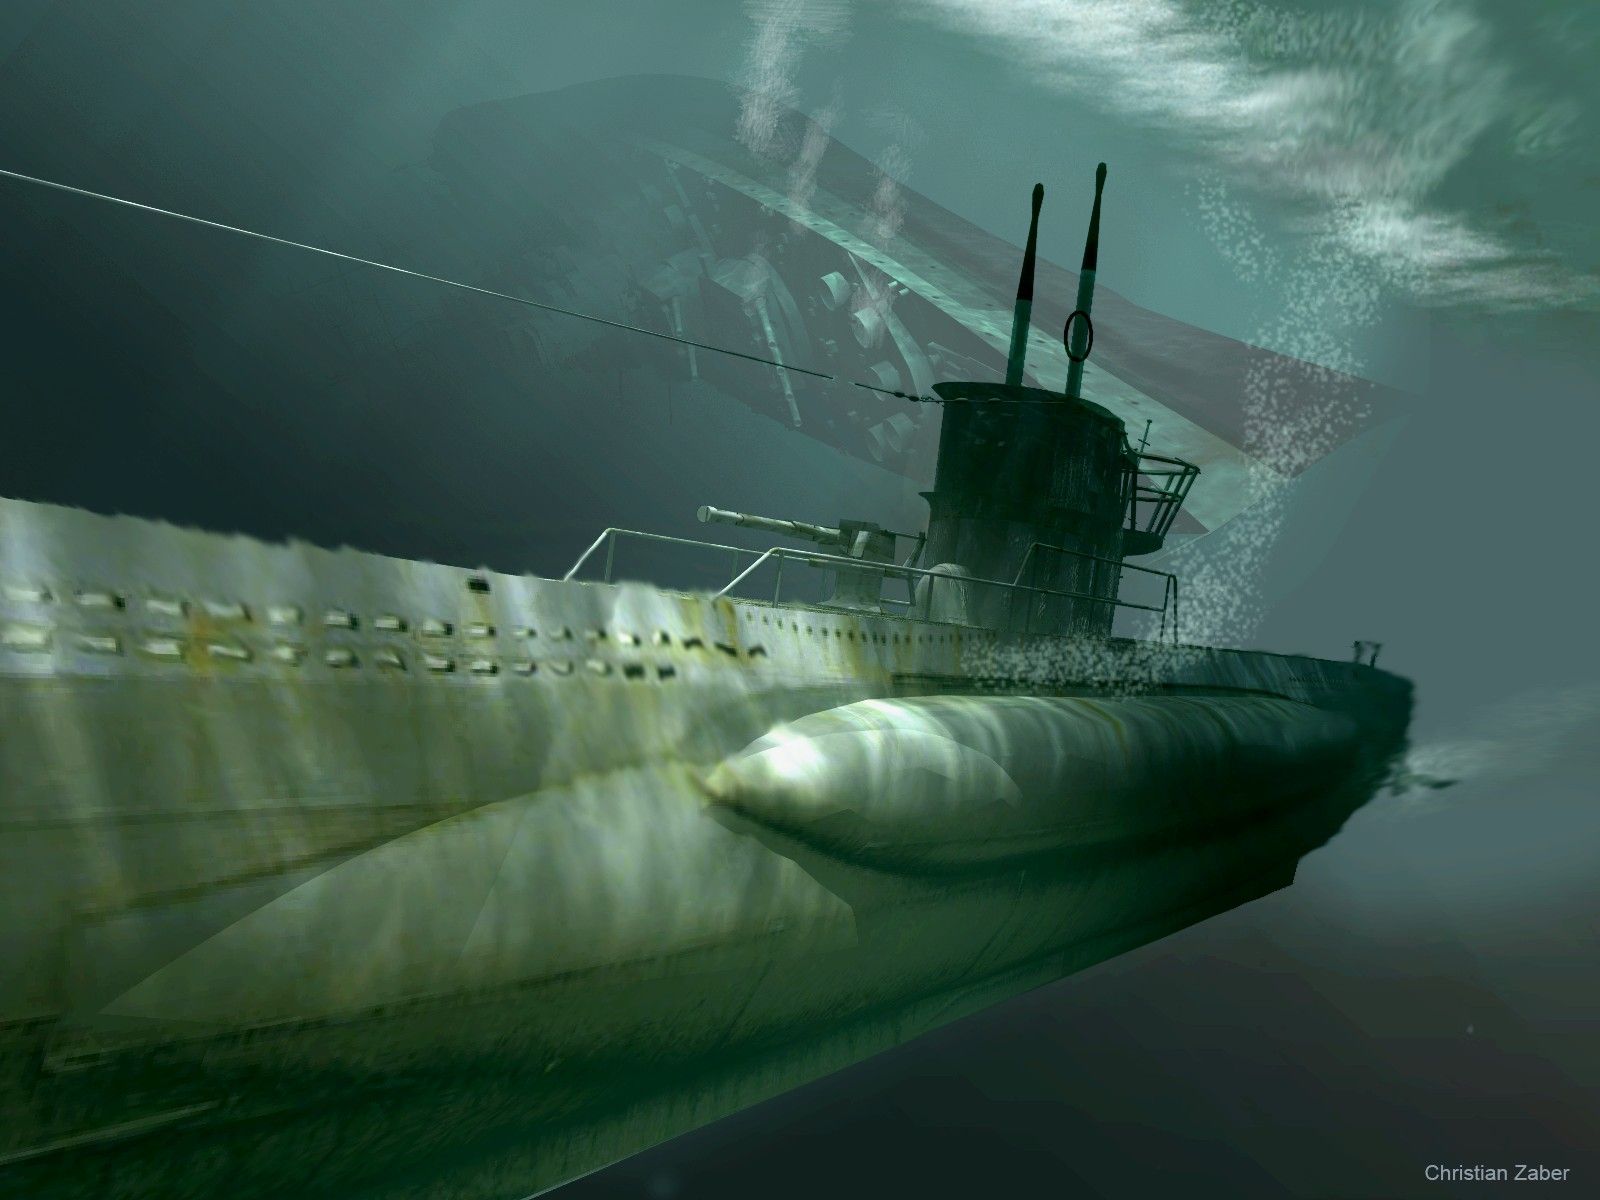  عکس جالب و خاص از زیردریایی فوق العاده بزرگ 